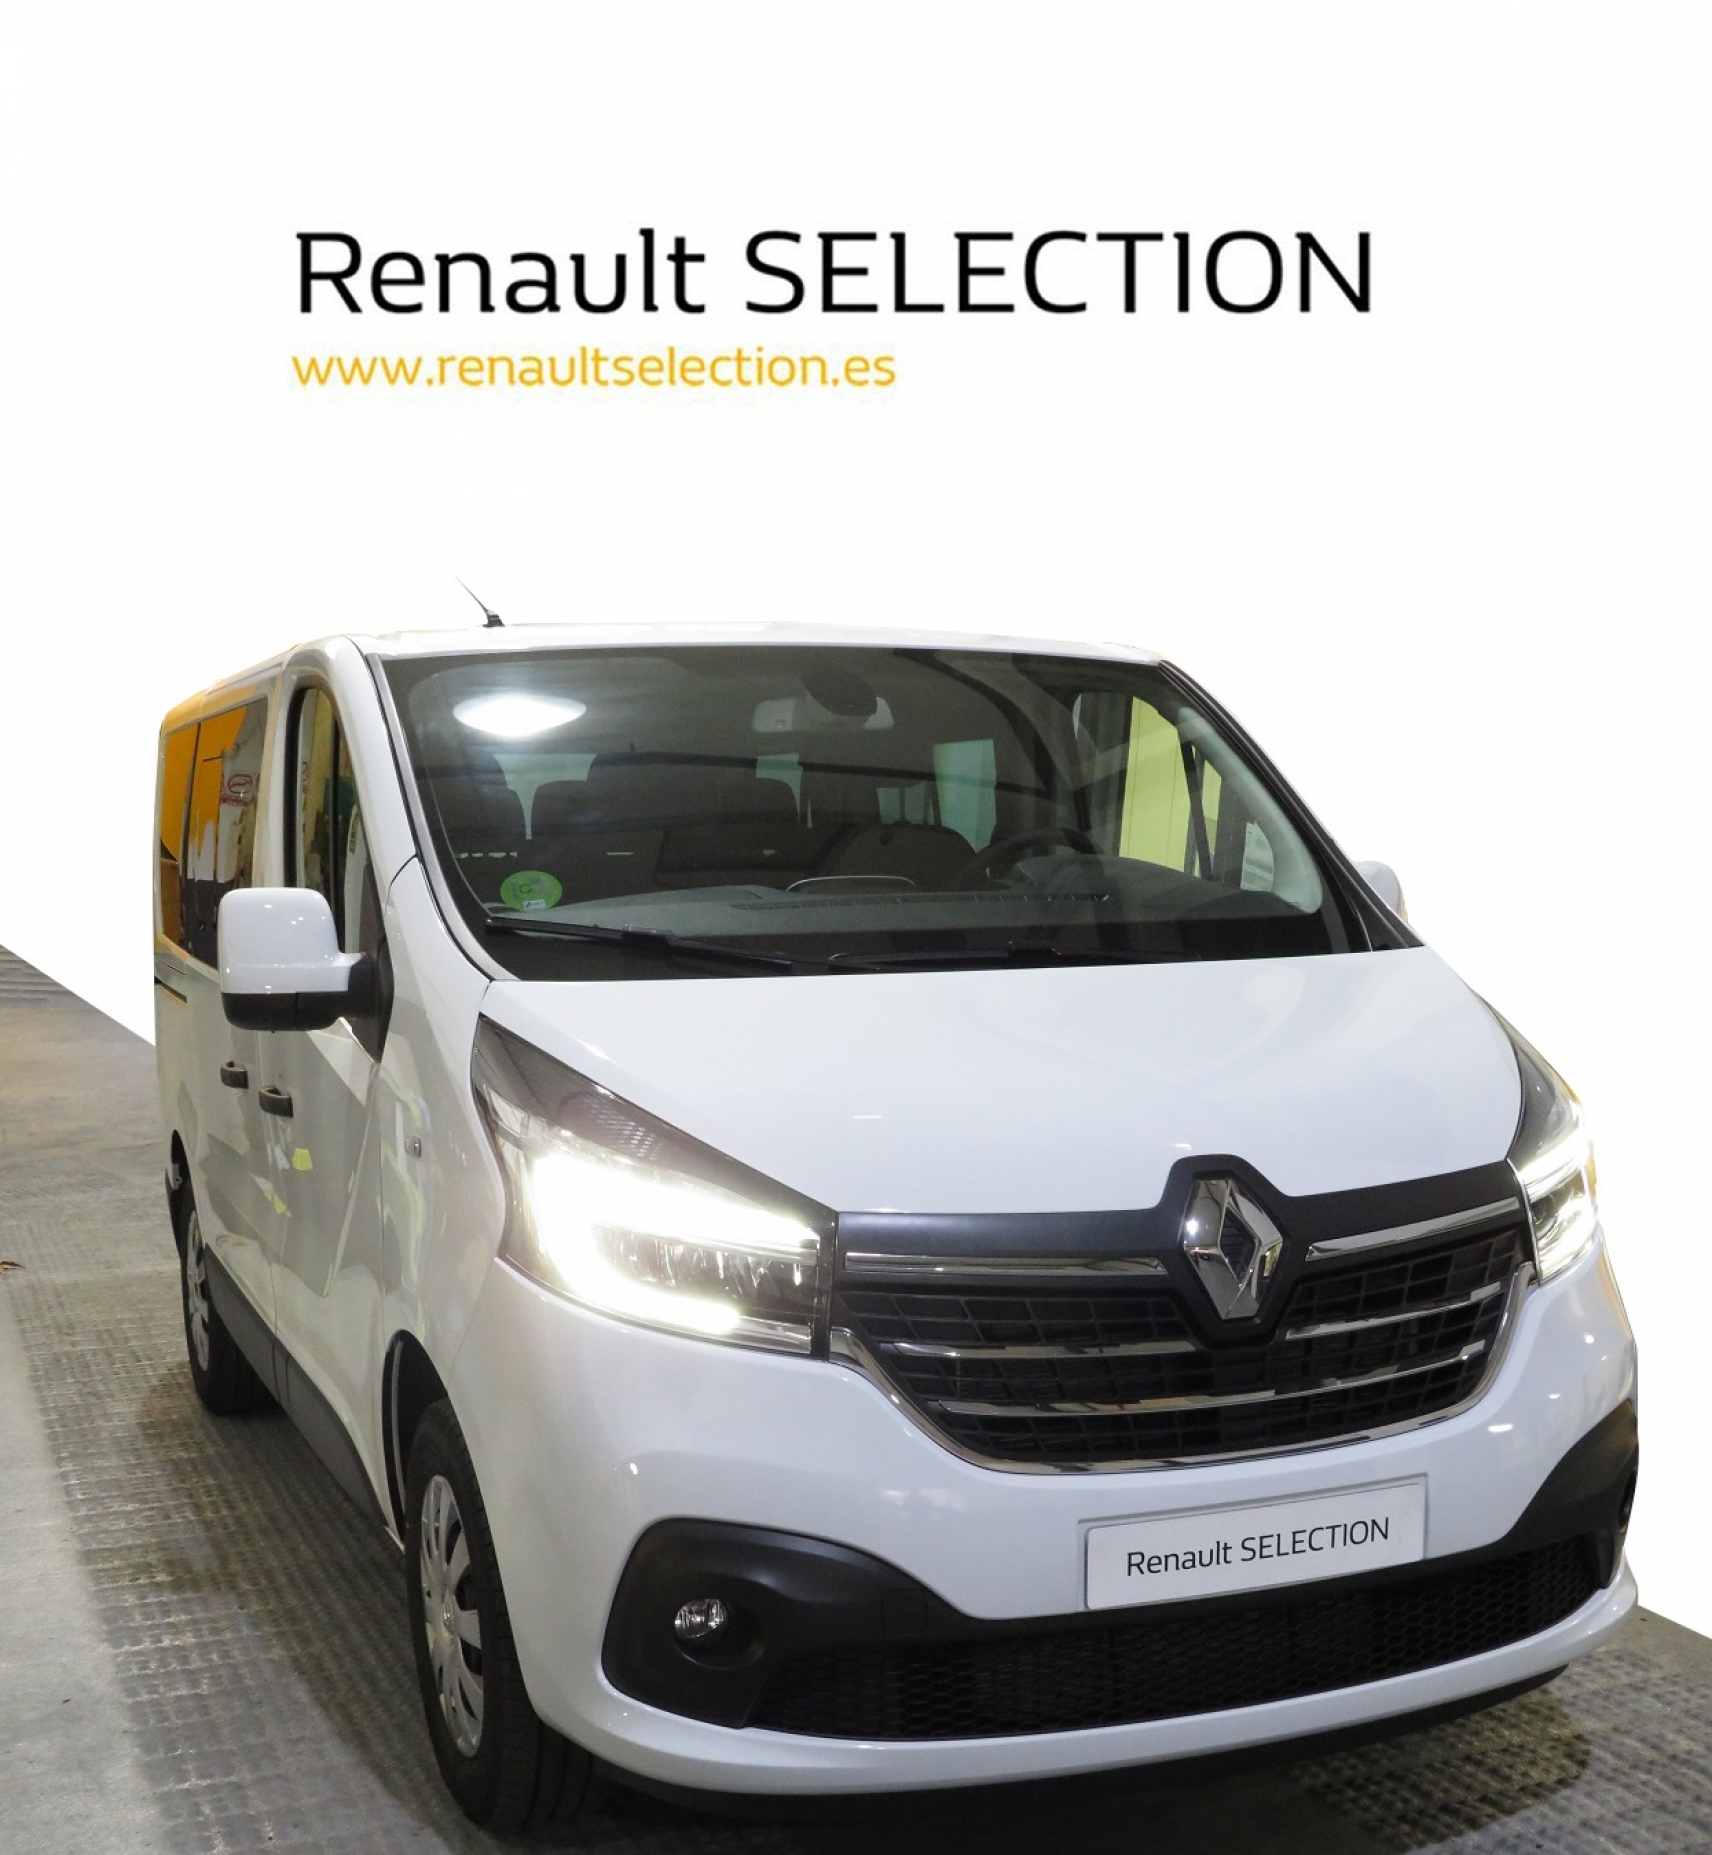 Renault Trafic - Segunda mano y ocasión